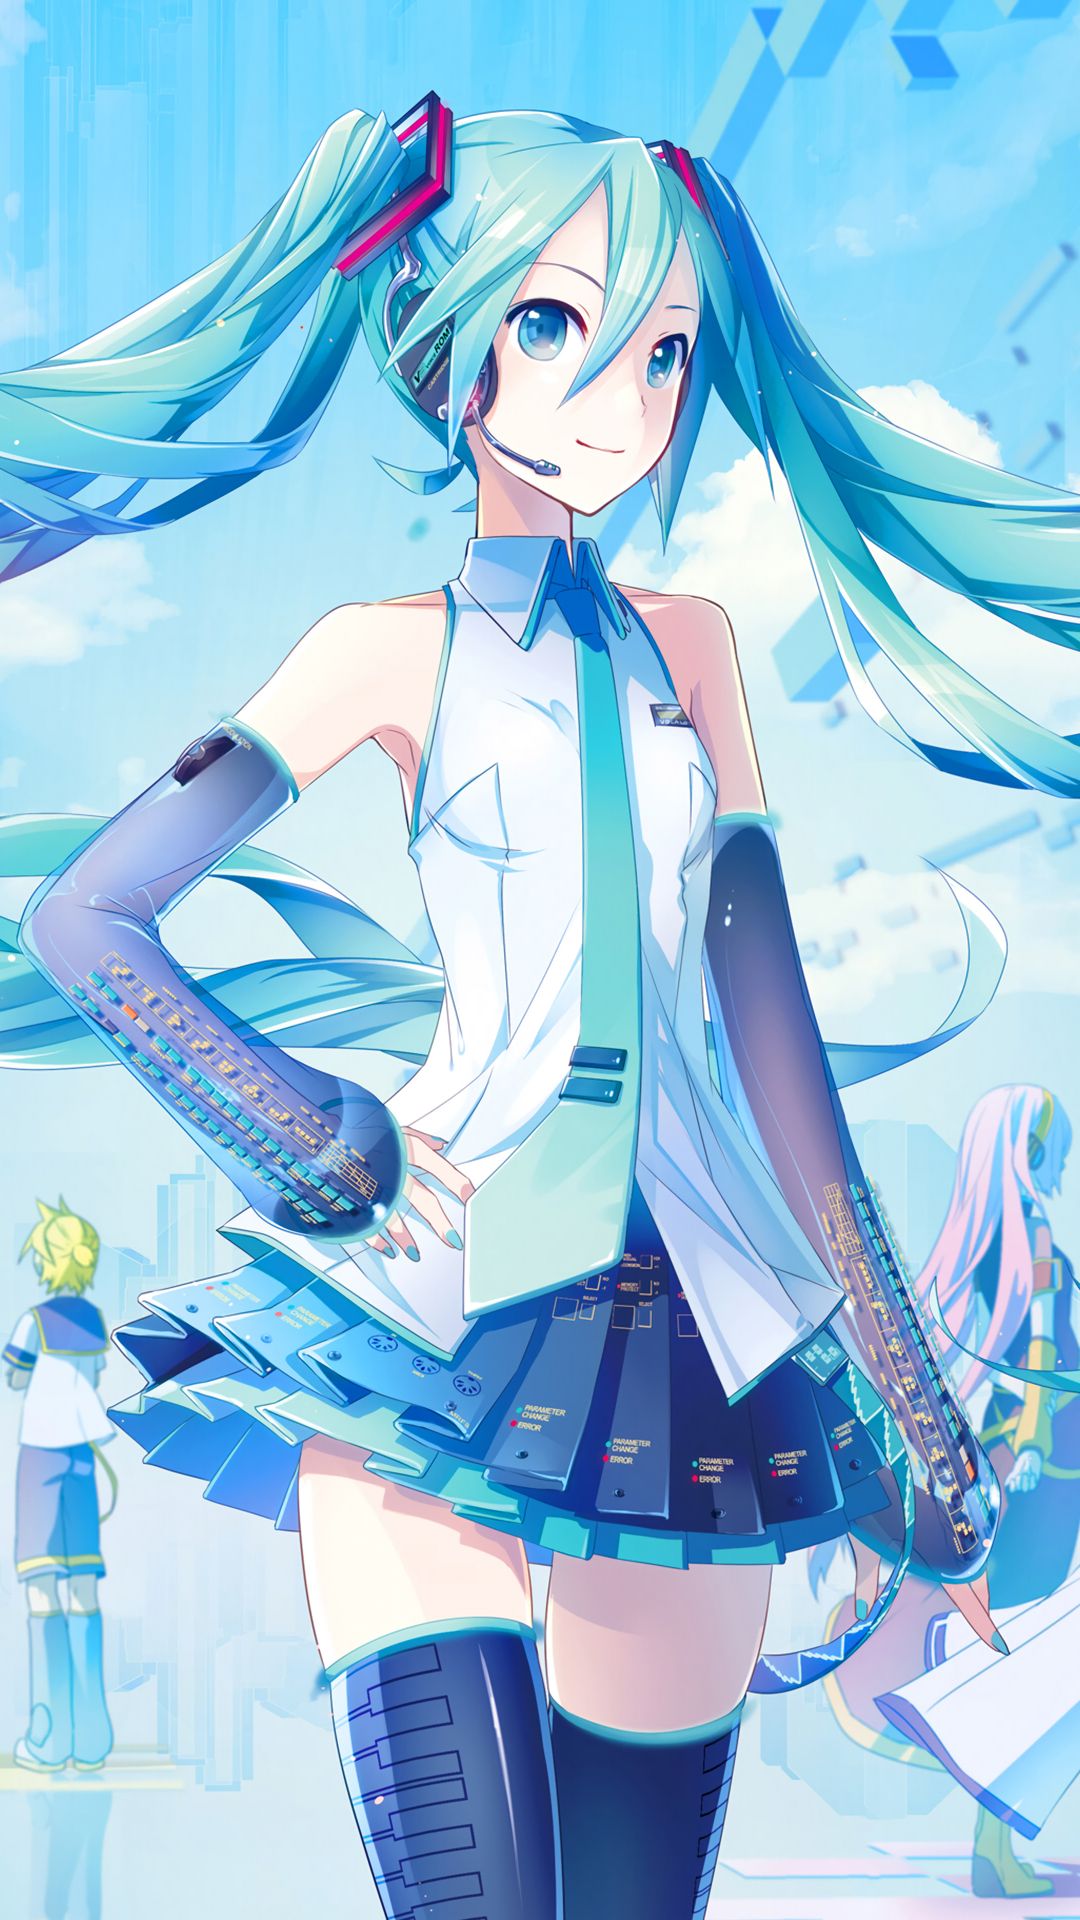 Anime Vocaloid (1080x1920) Wallpaper